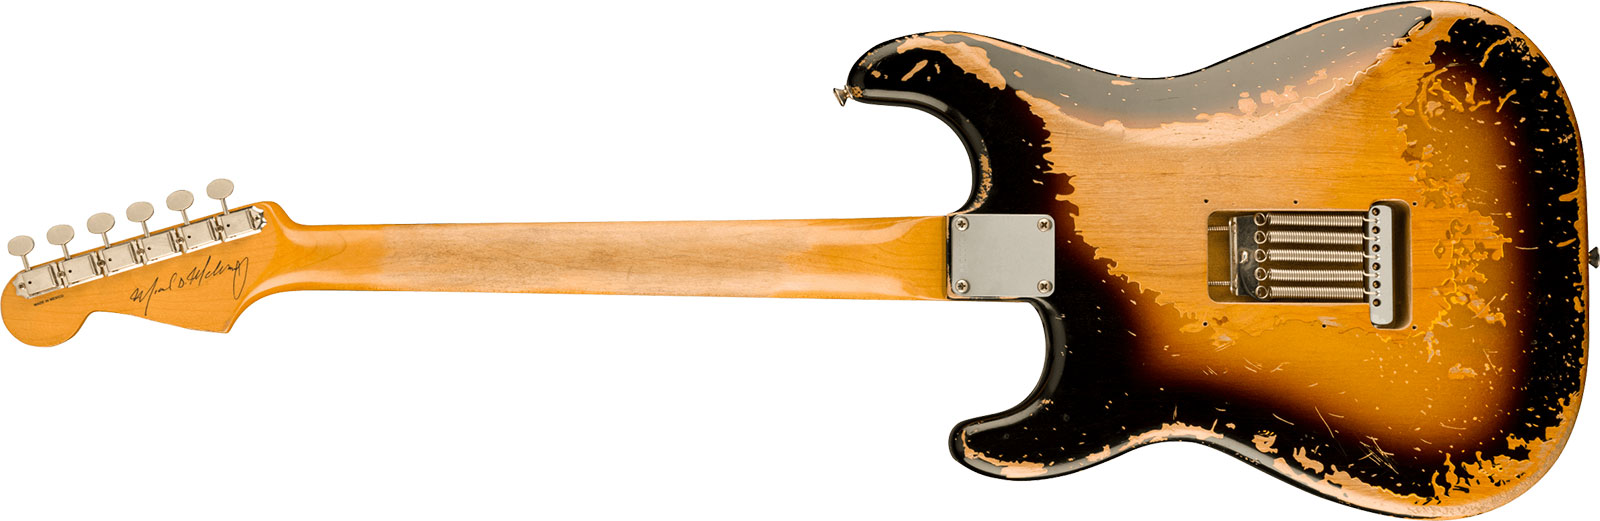 Fender Mike Mccready Strat Mex Signature 3s Trem Rw - Road Worn 3-color Sunburst - Kenmerkende elektrische gitaar - Variation 1